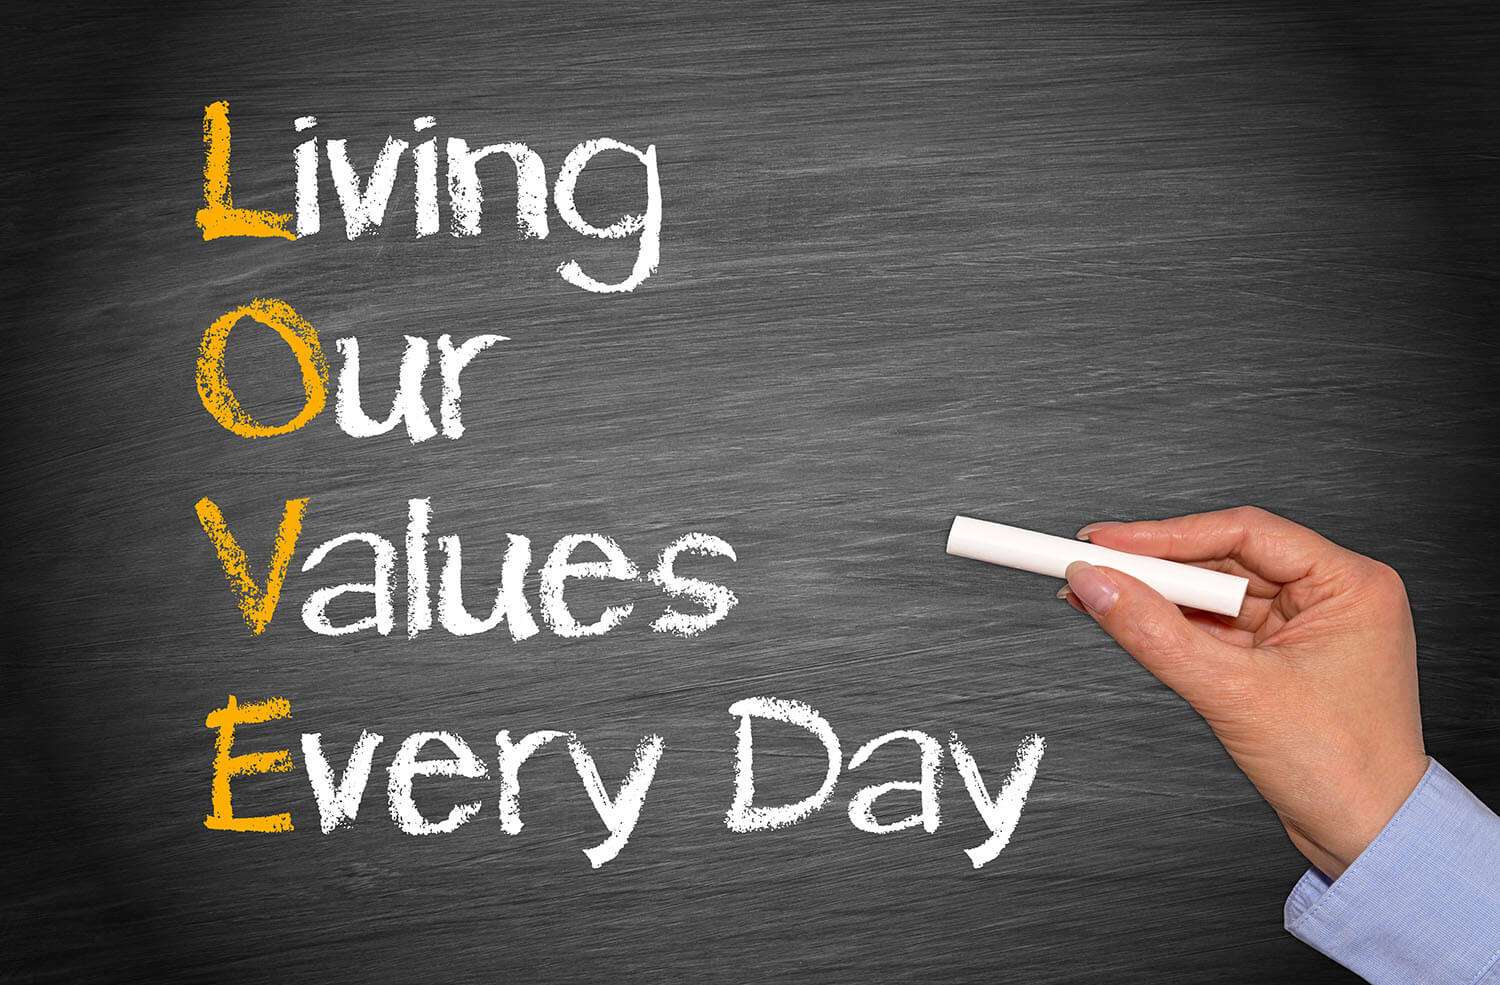 Unsere Werte jeden Tag leben